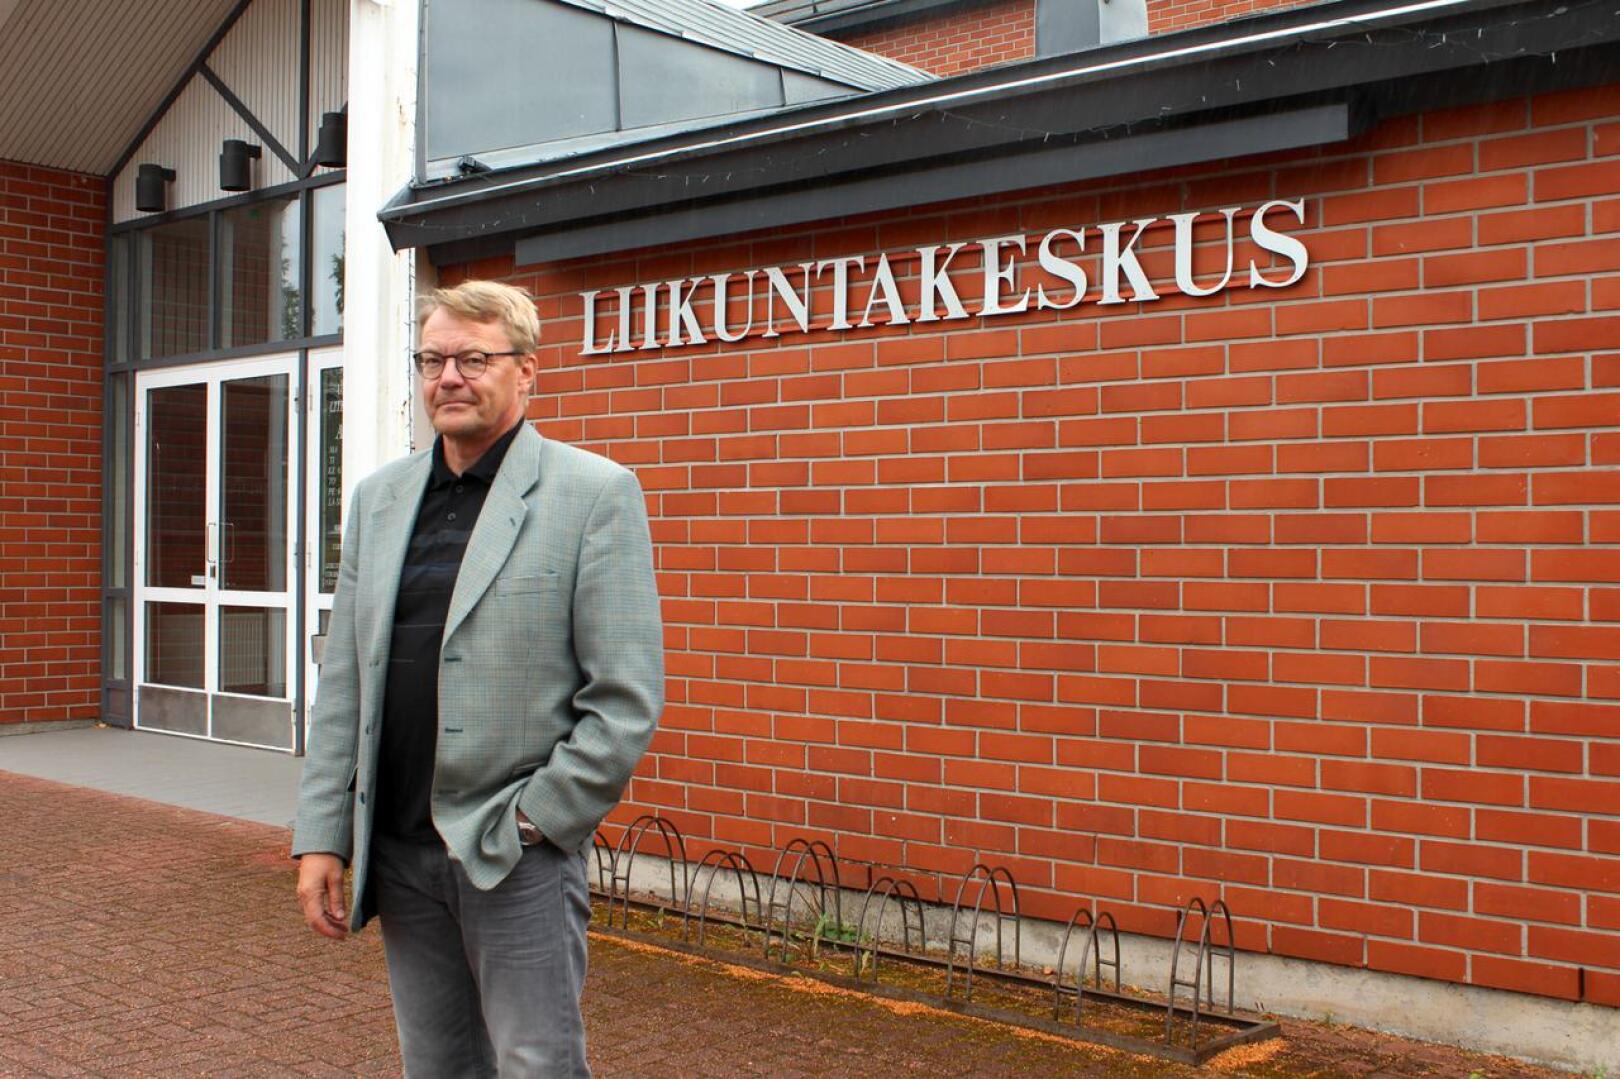 Vetelin kunta aloittaa yt-neuvottelut henkilöstönsä lomauttamiseksi, kertoo kunnanjohtaja Hannu Jyrkkä. Poikkeustilan takia kunta on joutunut supistamaan palveluitaan. Muun muassa liikuntakeskus on suljettu.